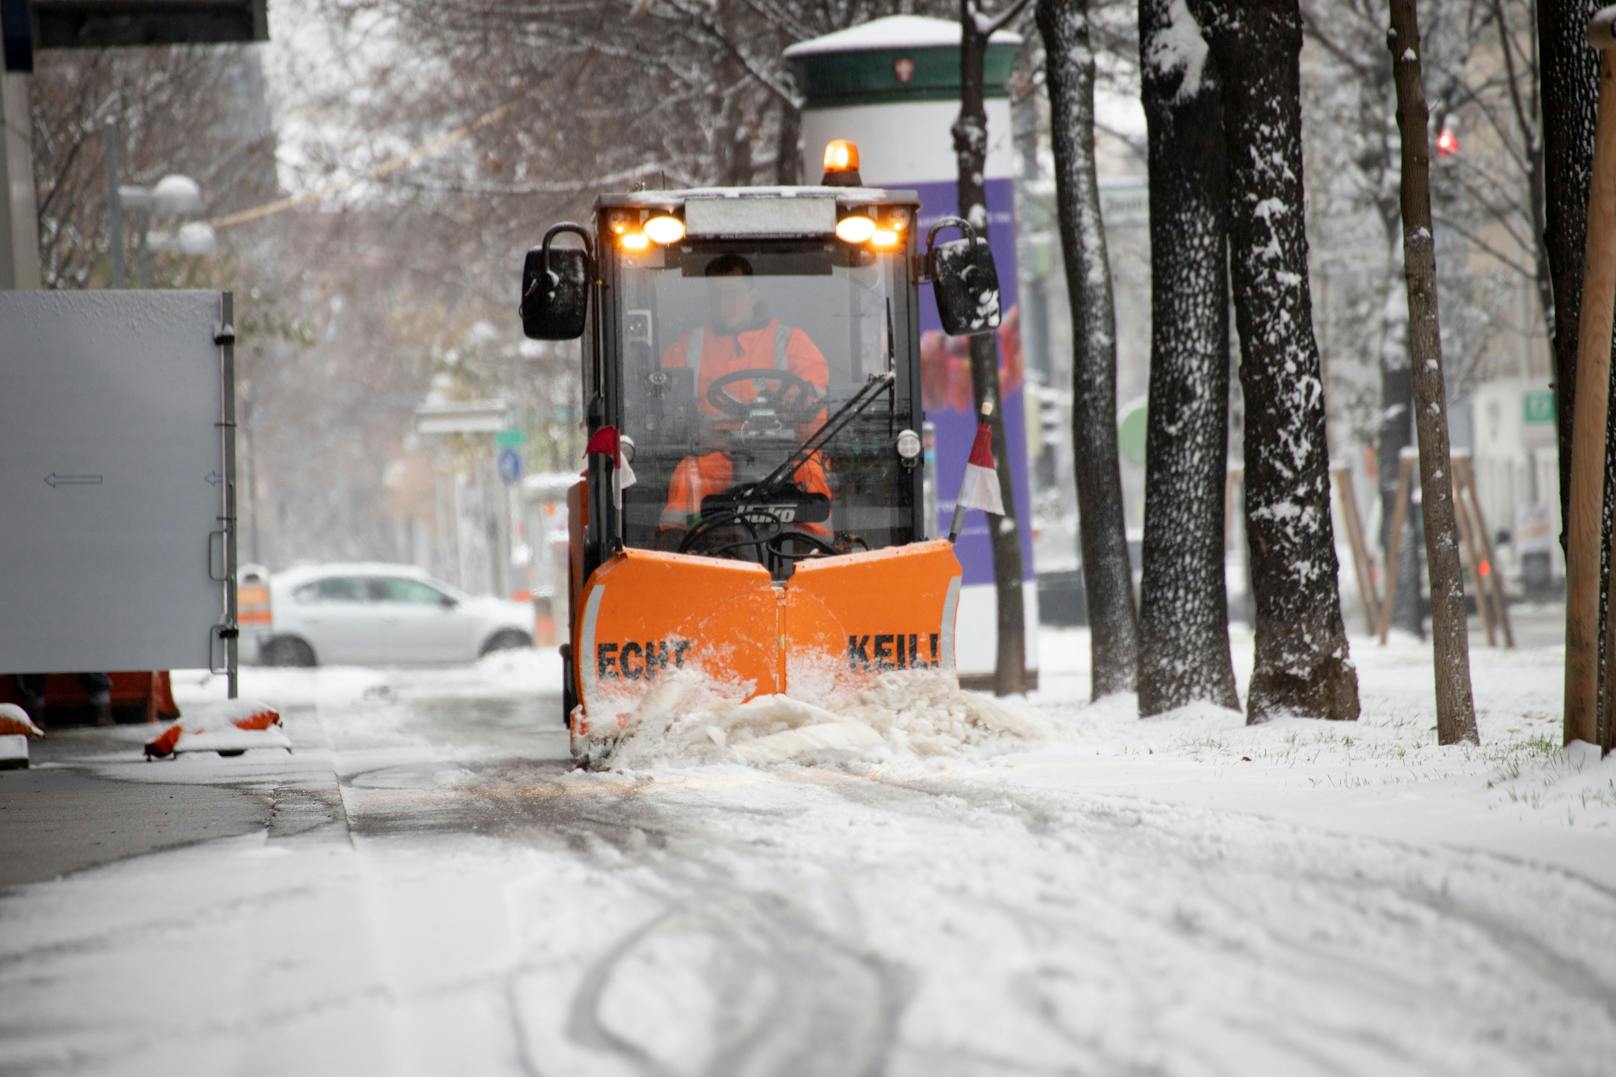 Schneefall und Kälte sorgen in Wien für weiße Straßen: Ein Räumfahrzeug der MA 48 räumt Schnee vom Gehsteig (3.12.2020)